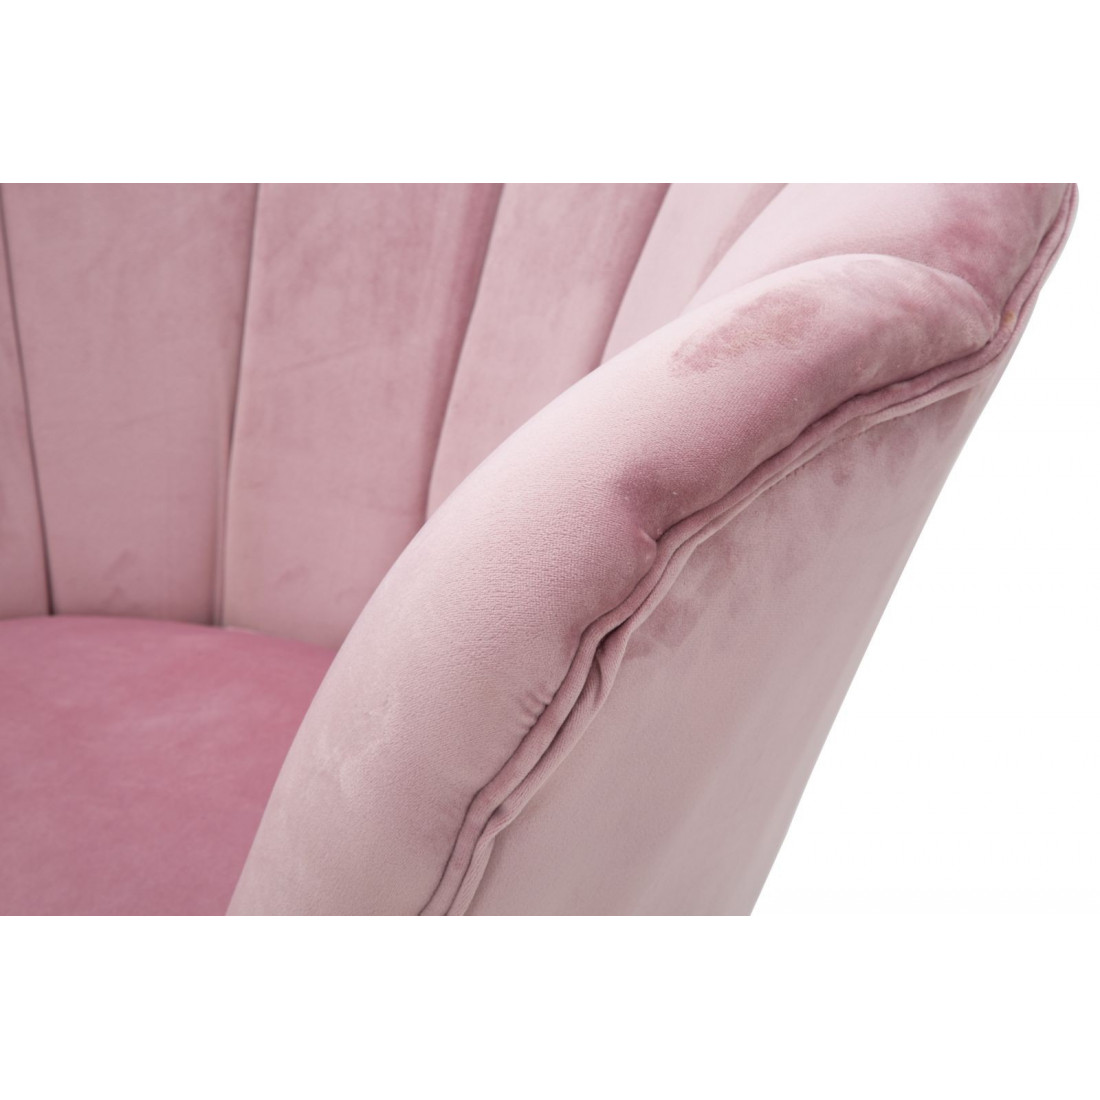 Poltrona rosa velluto cm 73x72h.77 nuova art.2808590000 consegna